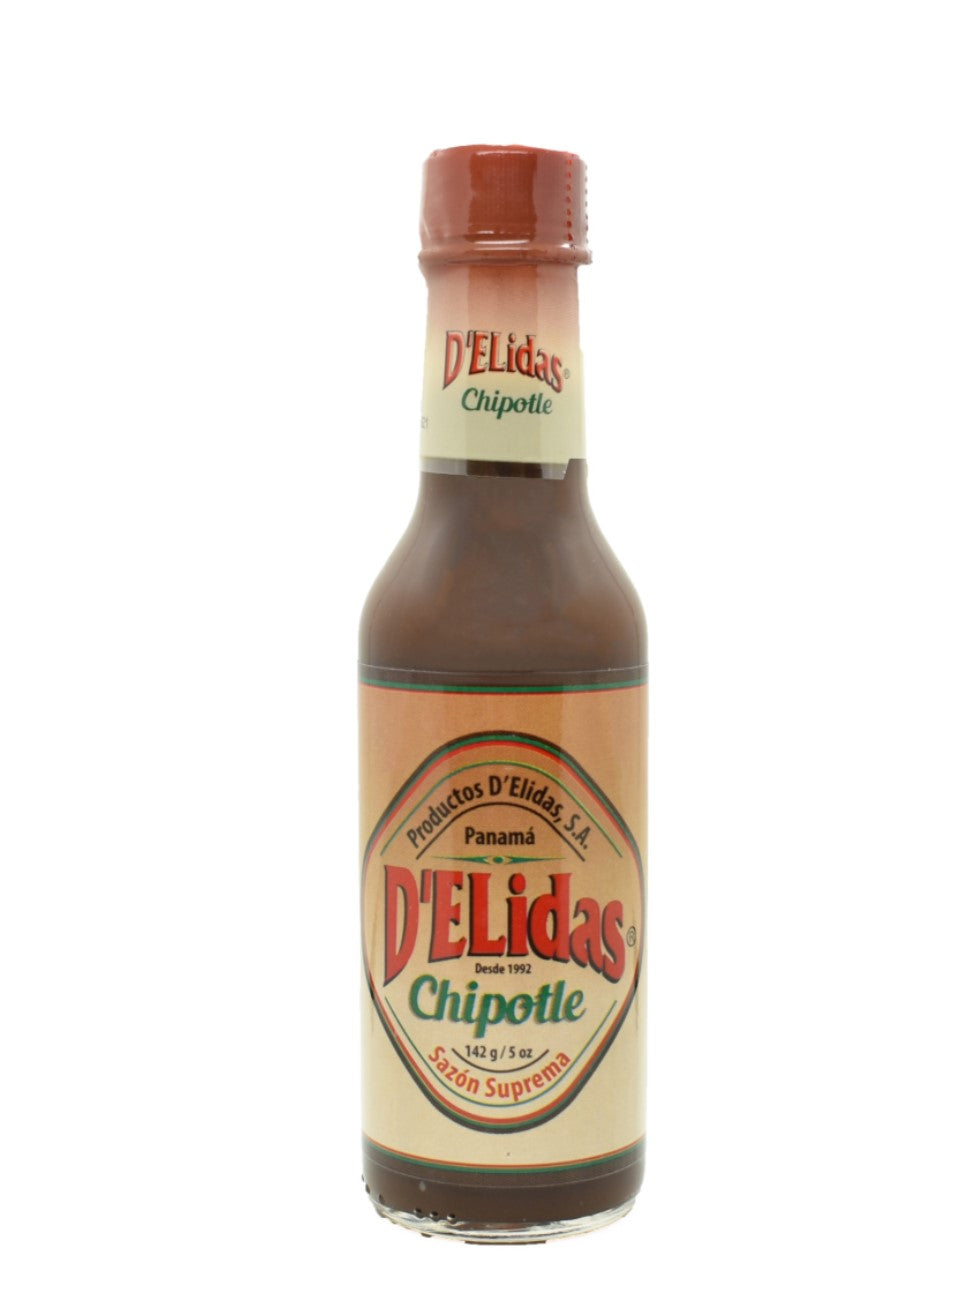 D'Elidas Chipotle Supreme Sauce Sazon Suprema All Natural, Non GMO, Gluten Free, Keto Friendly (5oz) Brown